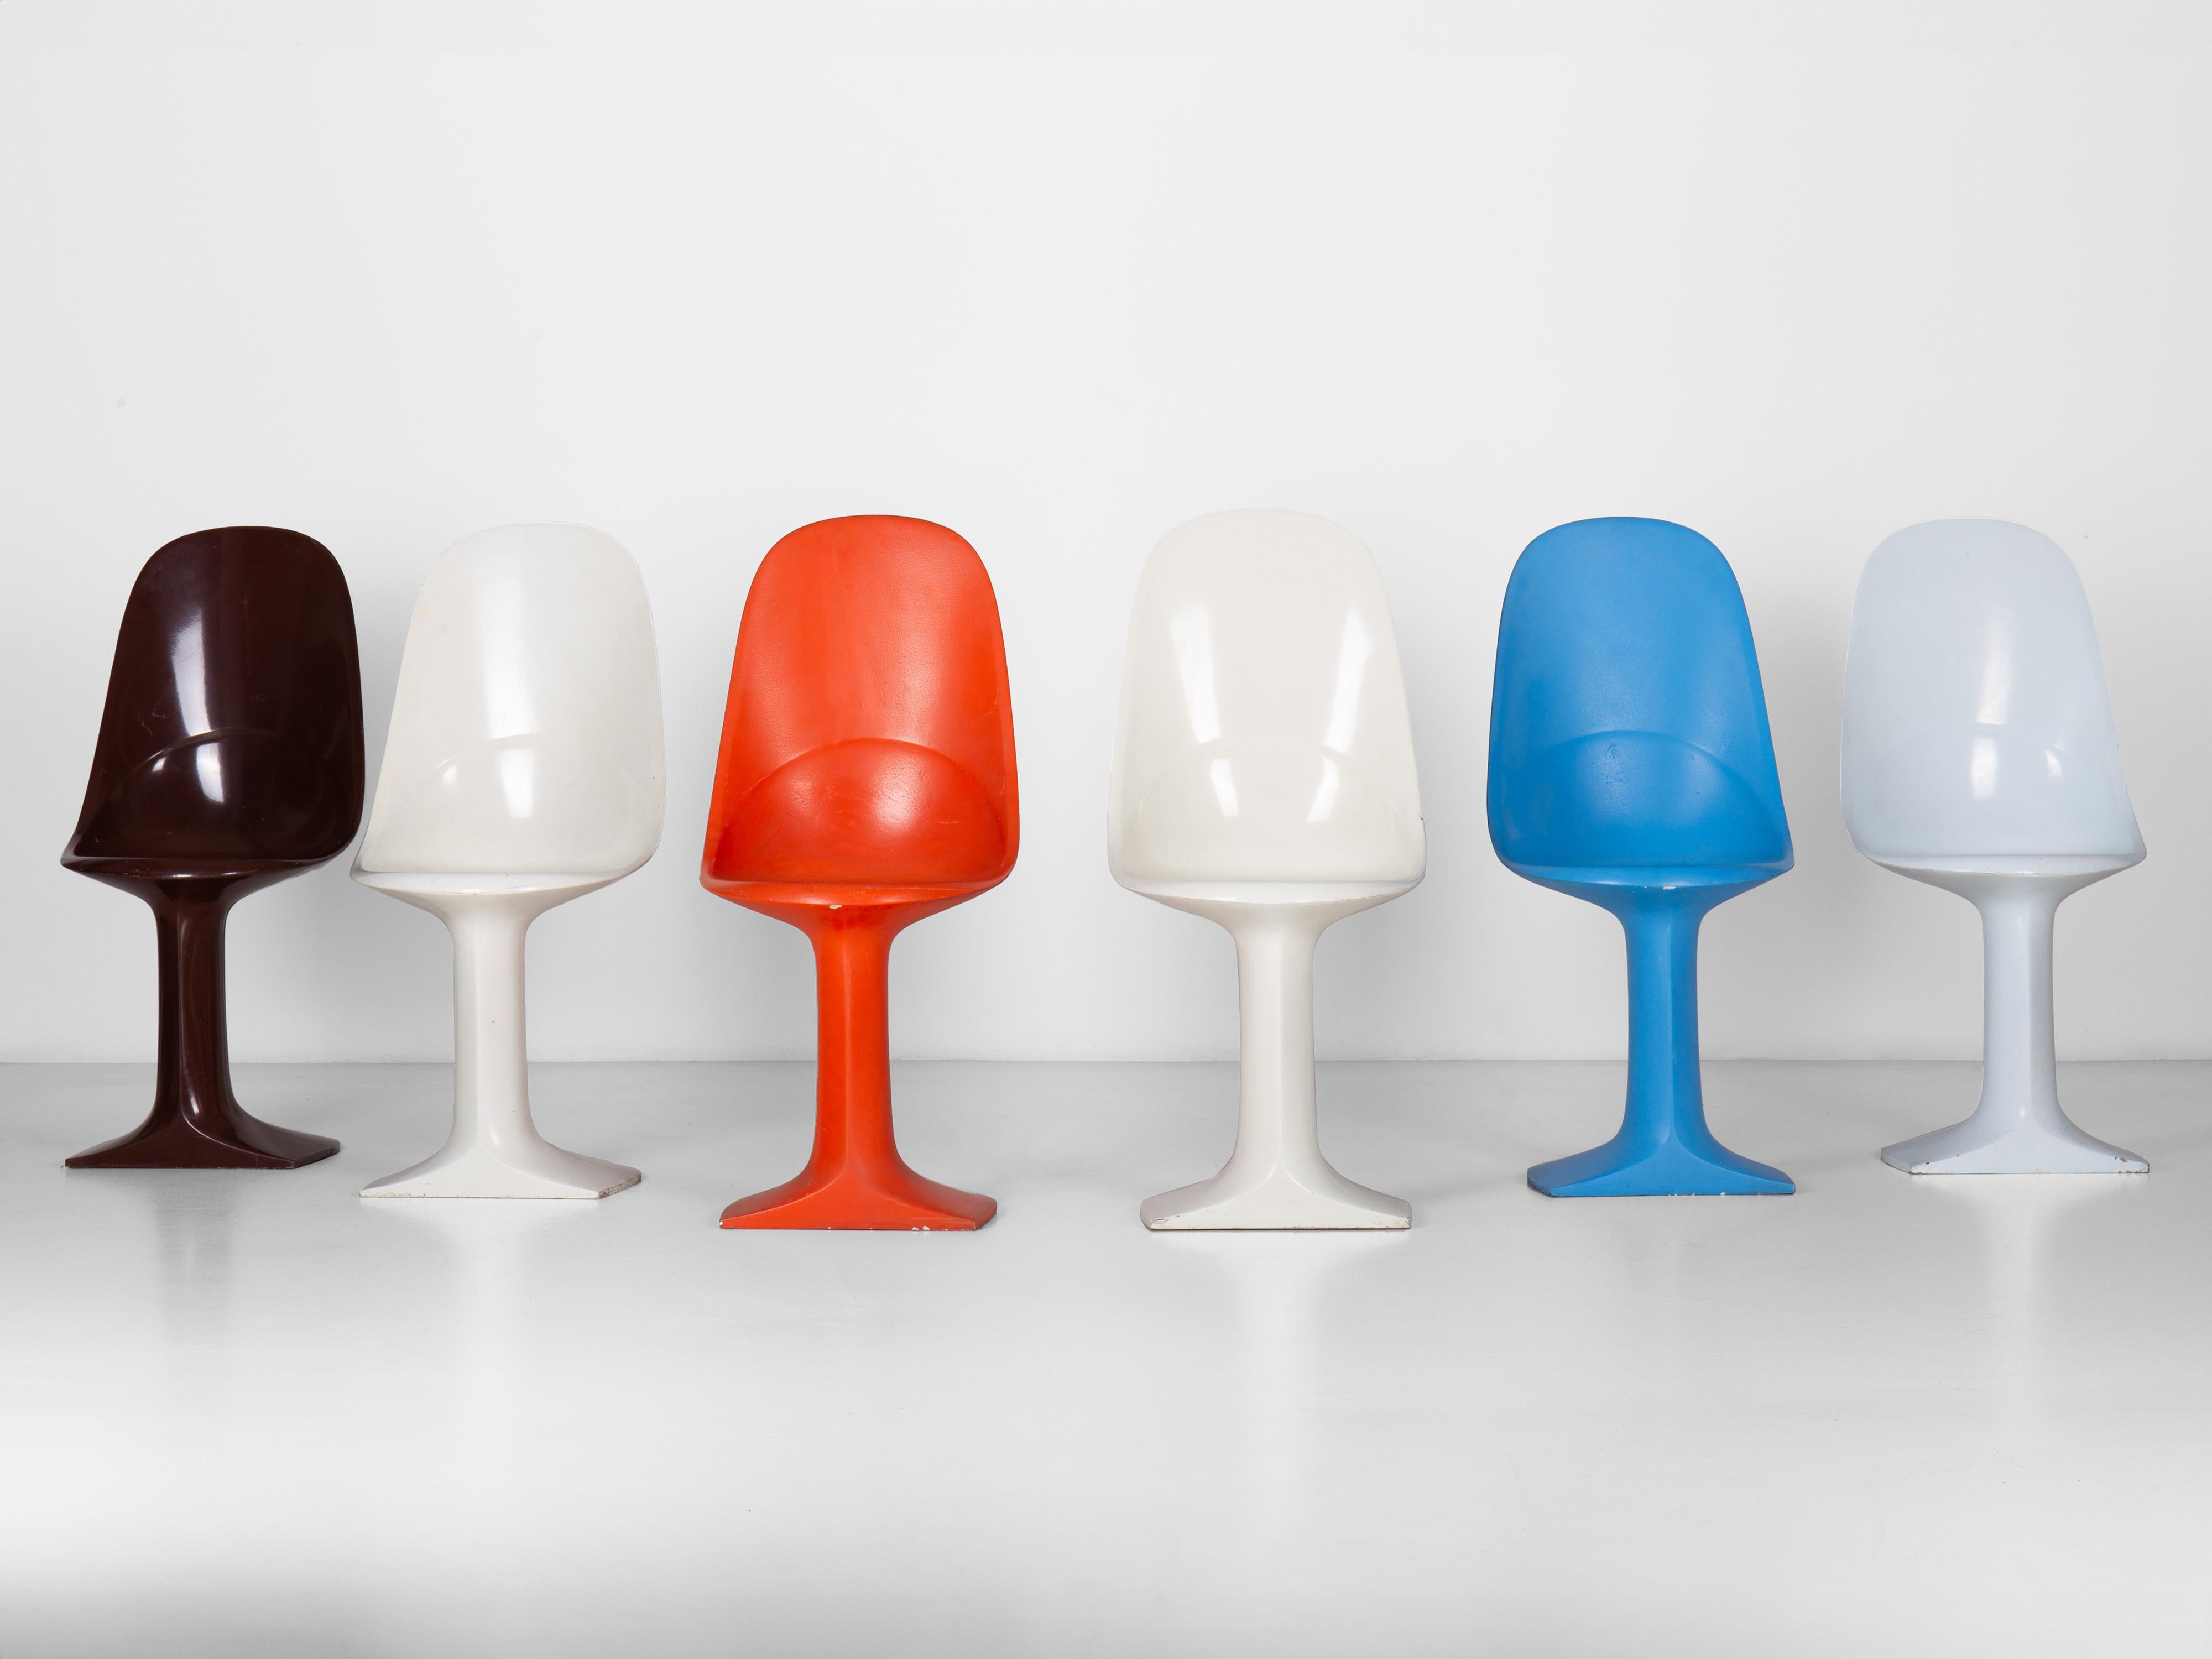 Ensemble de 6 chaises Foemina conçues par Augusto Betti.

La chaise Foemina est le premier objet de design de Betti.

